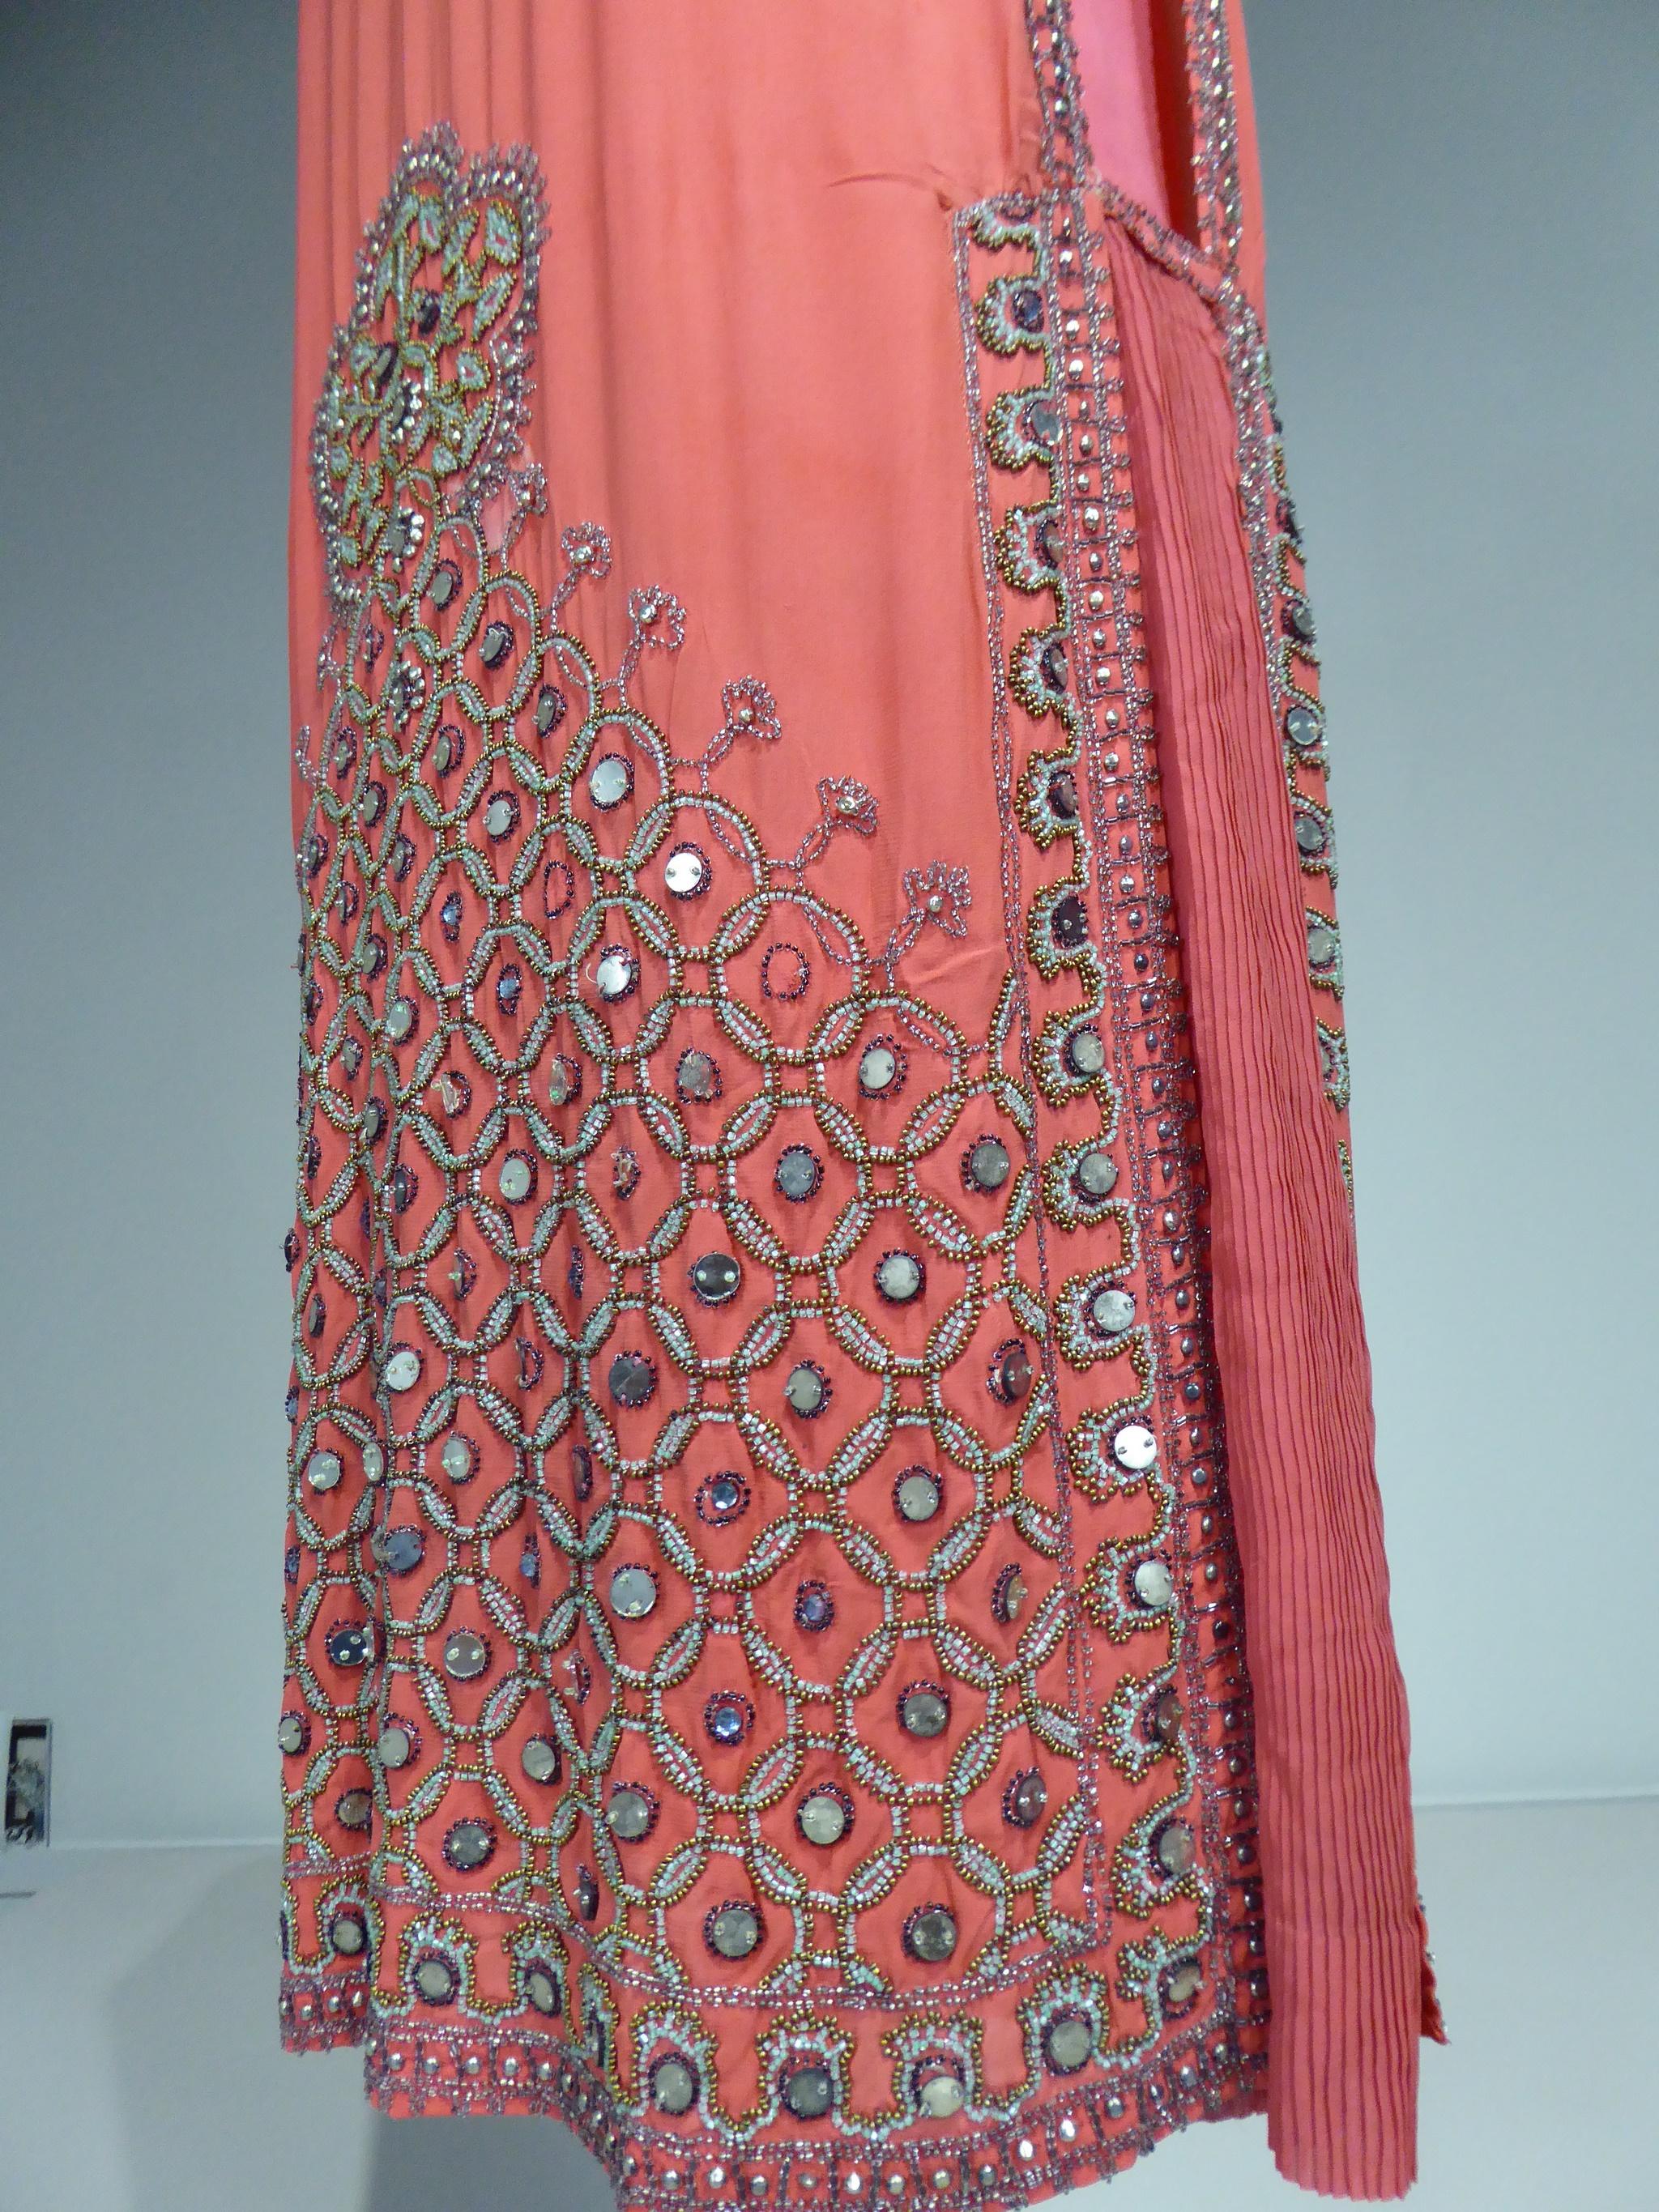 Orientalistisches Flapper-Kleid aus Seidenkrepp Frankreich um 1925 (Pink)